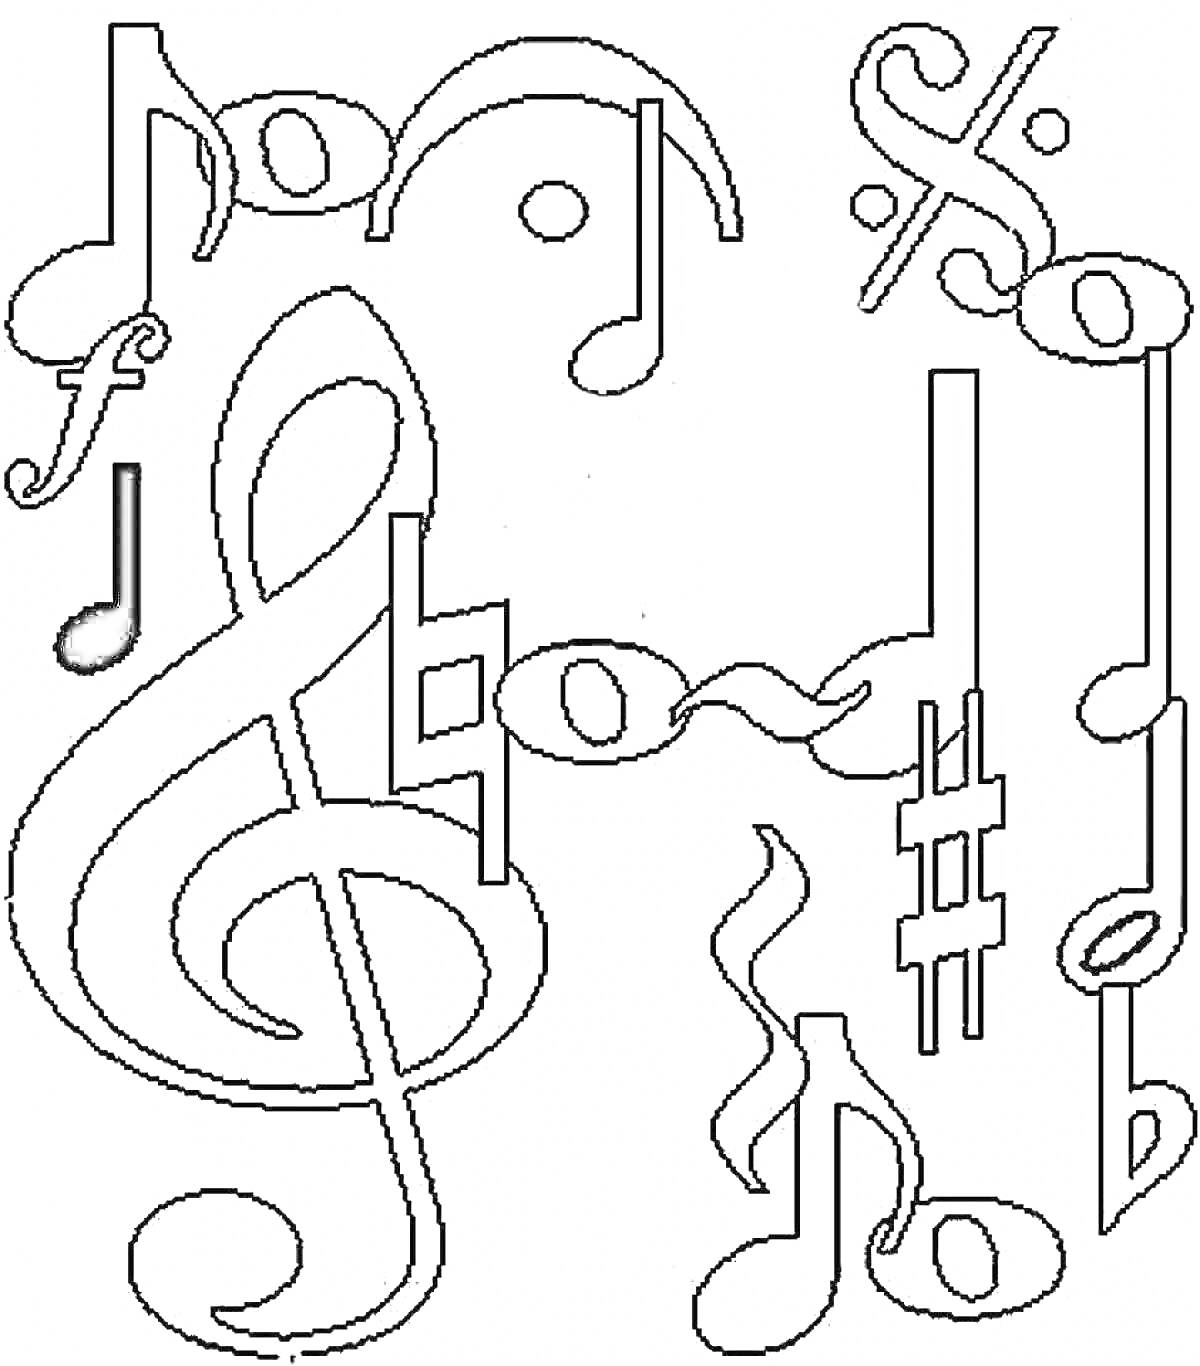 Раскраска Музыкальные ноты - скрипичный ключ, восьмые ноты, арфовые ноты, бемоль, диез, форте